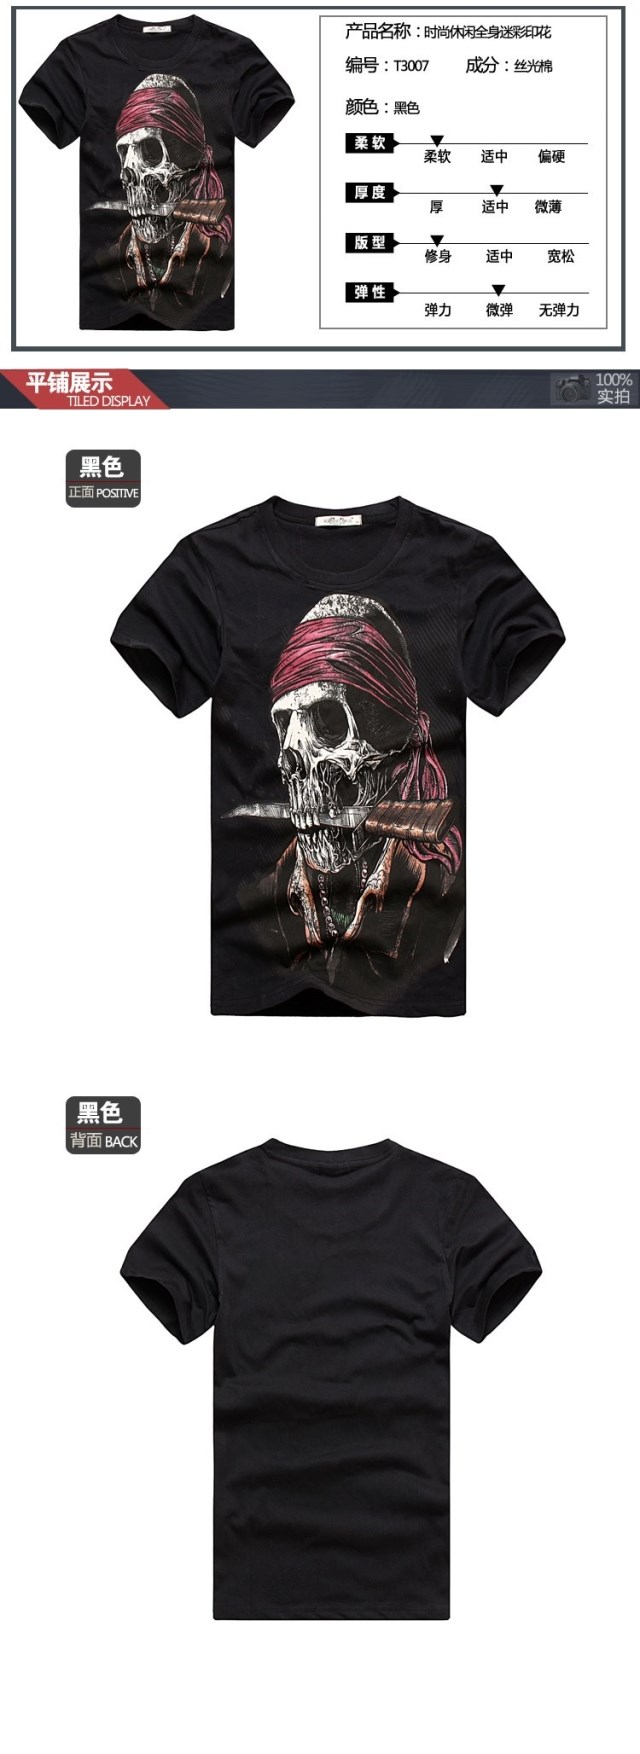 2013爆款3D立体海盗骷髅头含剑男士短袖T恤.jpg